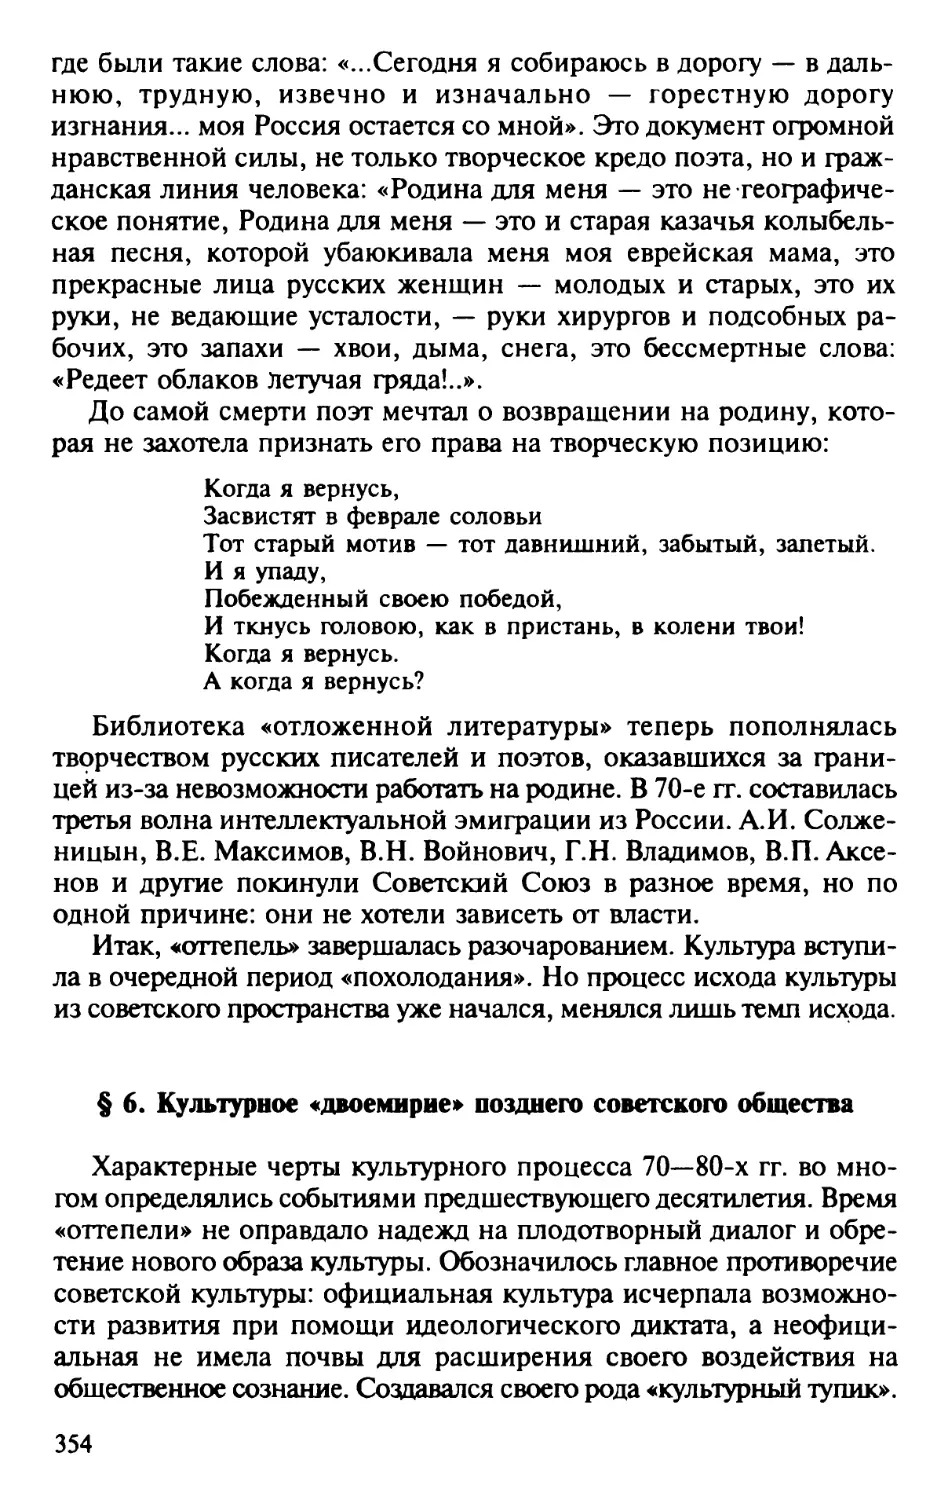 § 6. Культурное «двоемирие» позднего советского общества